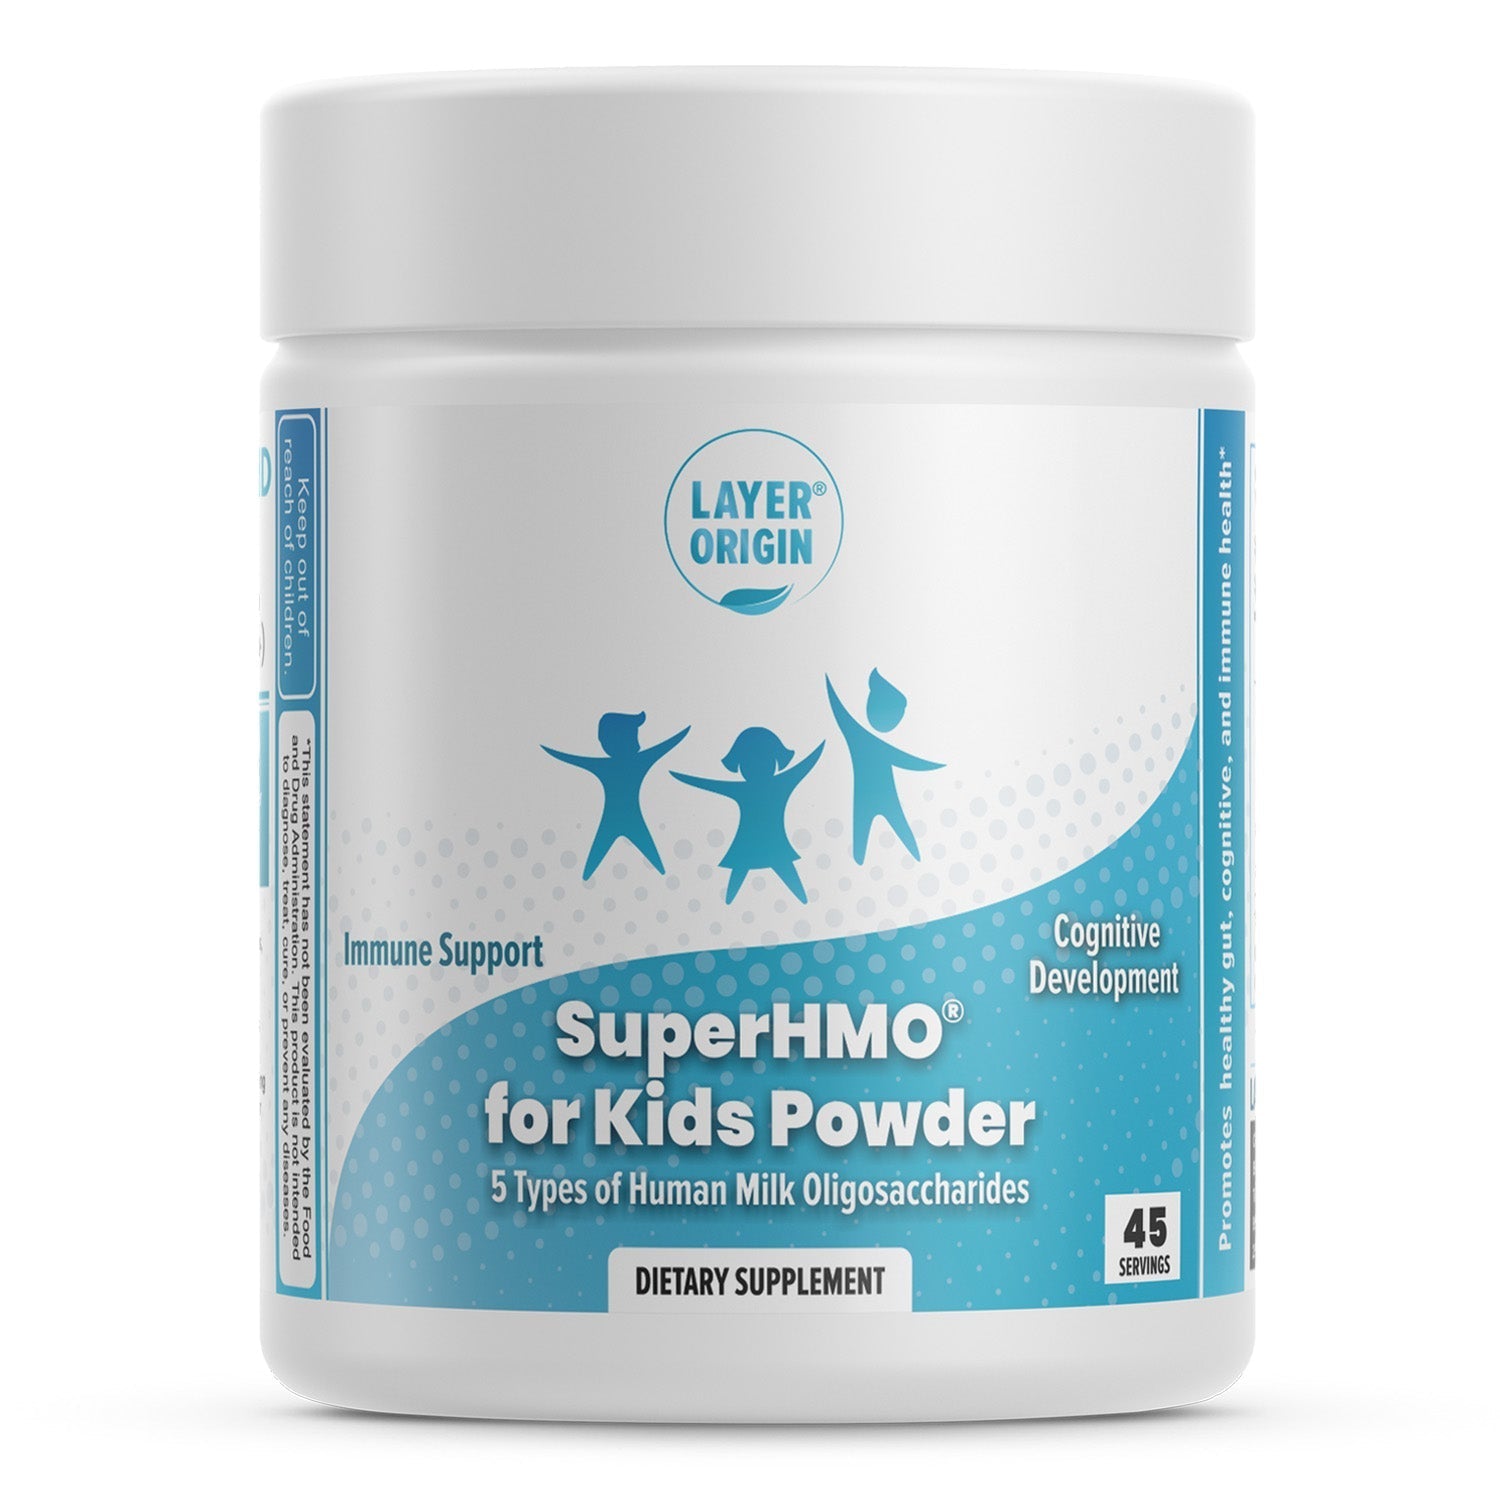 SuperHMO for Kids Powder - 45 Servings | Layer Origin